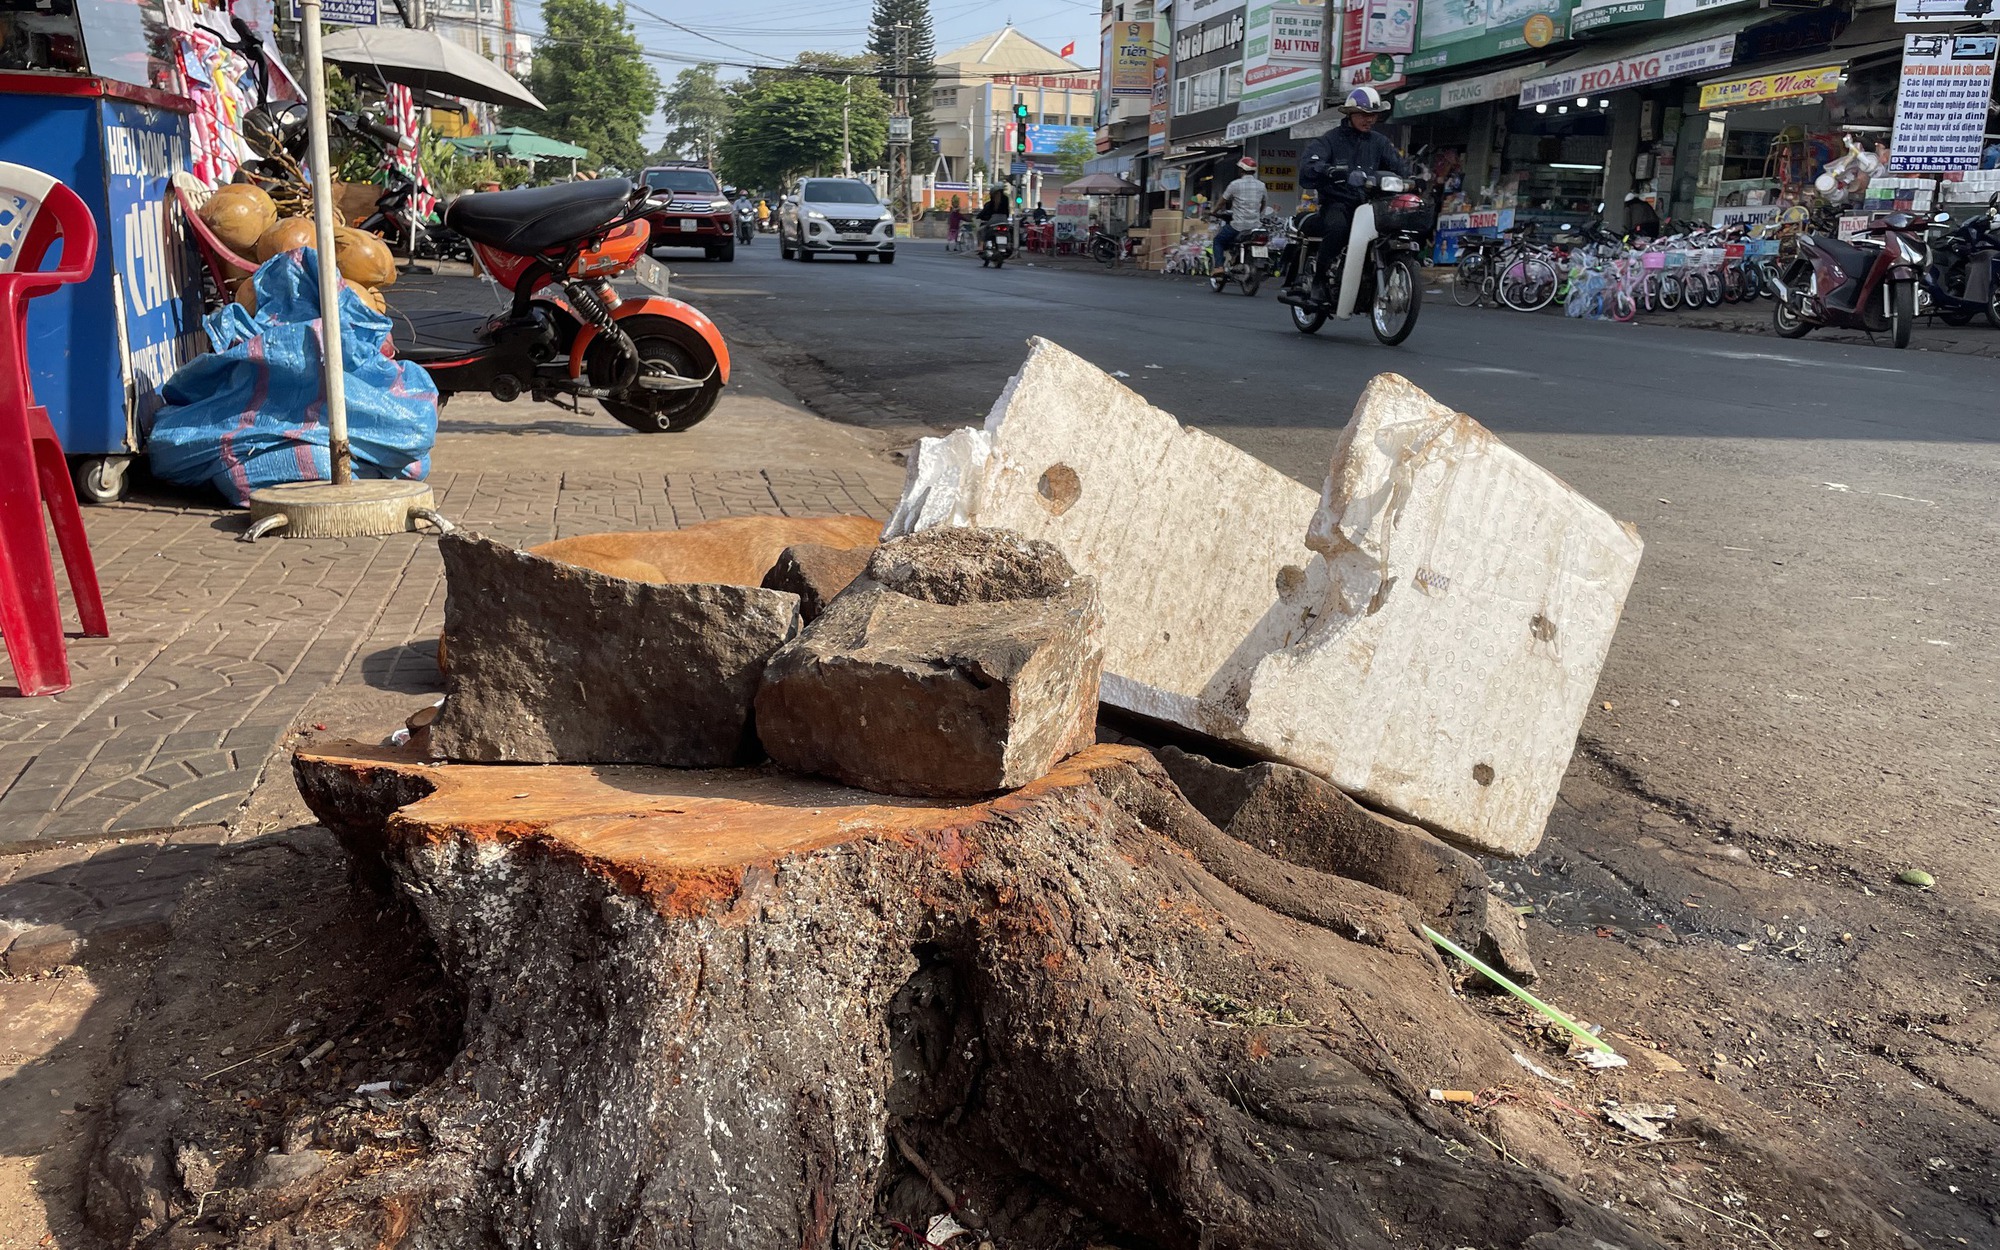 Hàng loạt cây xanh đô thị ở Gia Lai bị cưa hạ